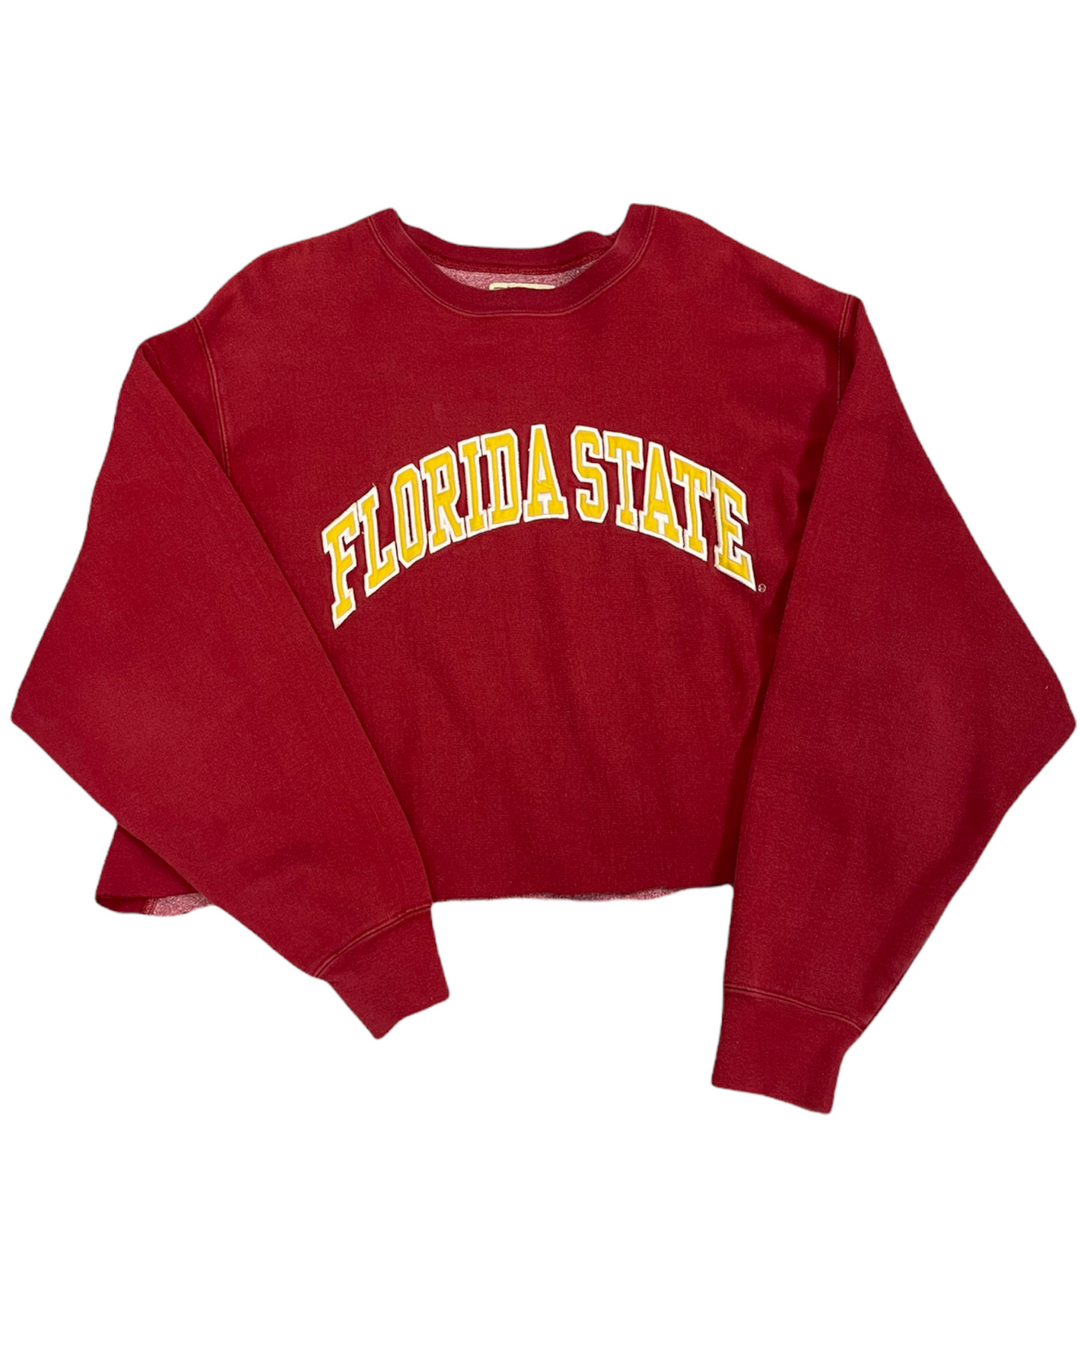 FSU Cut and Cropped Vintage Sweatshirt